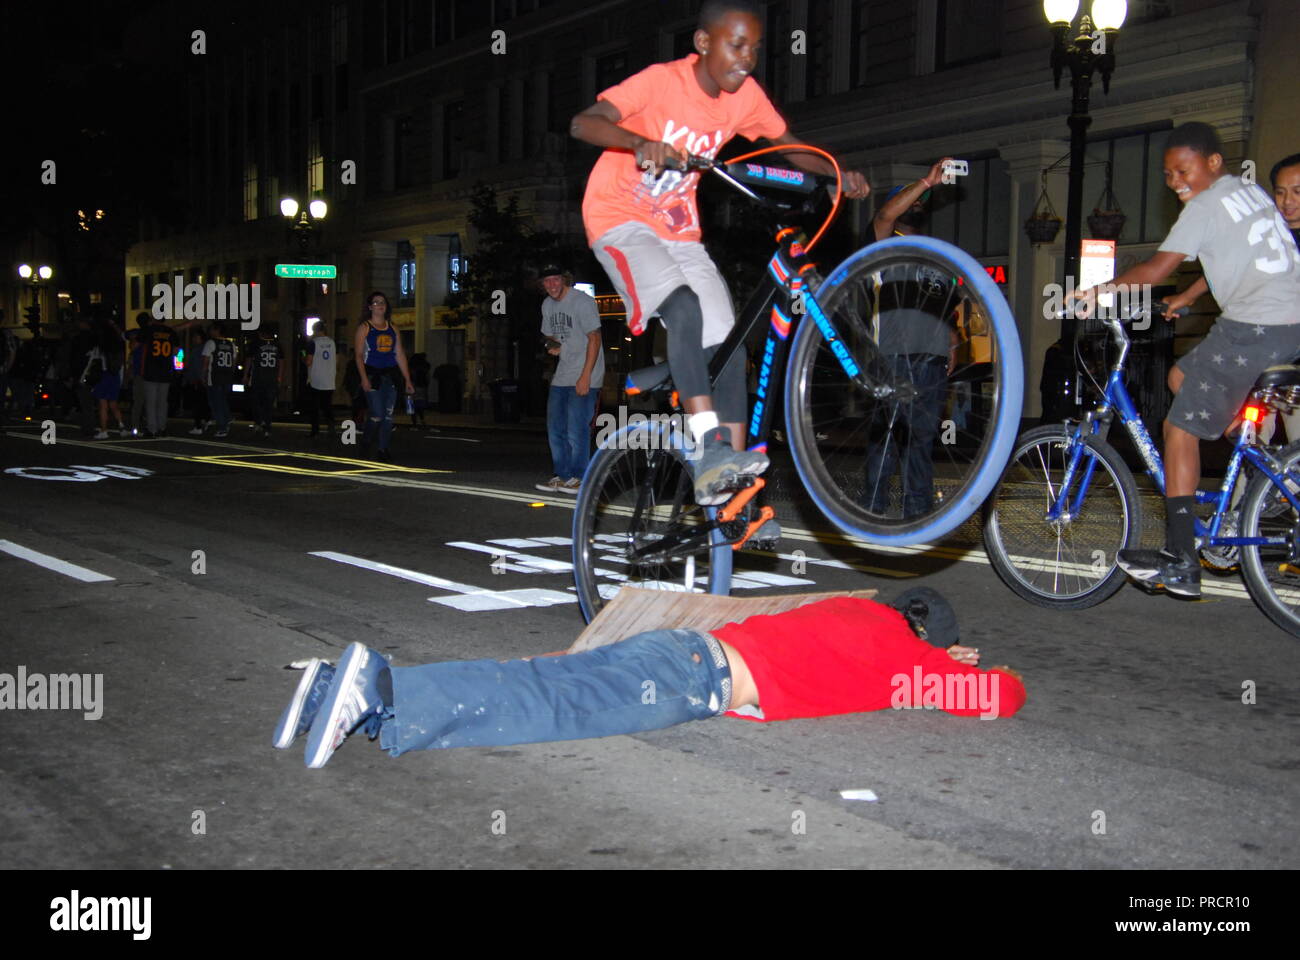 Una persona che si trova sulla strada mentre un altro salta su di lui con una bici durante una celebrazione per il Golden State Warriors campionato NBA, Foto Stock